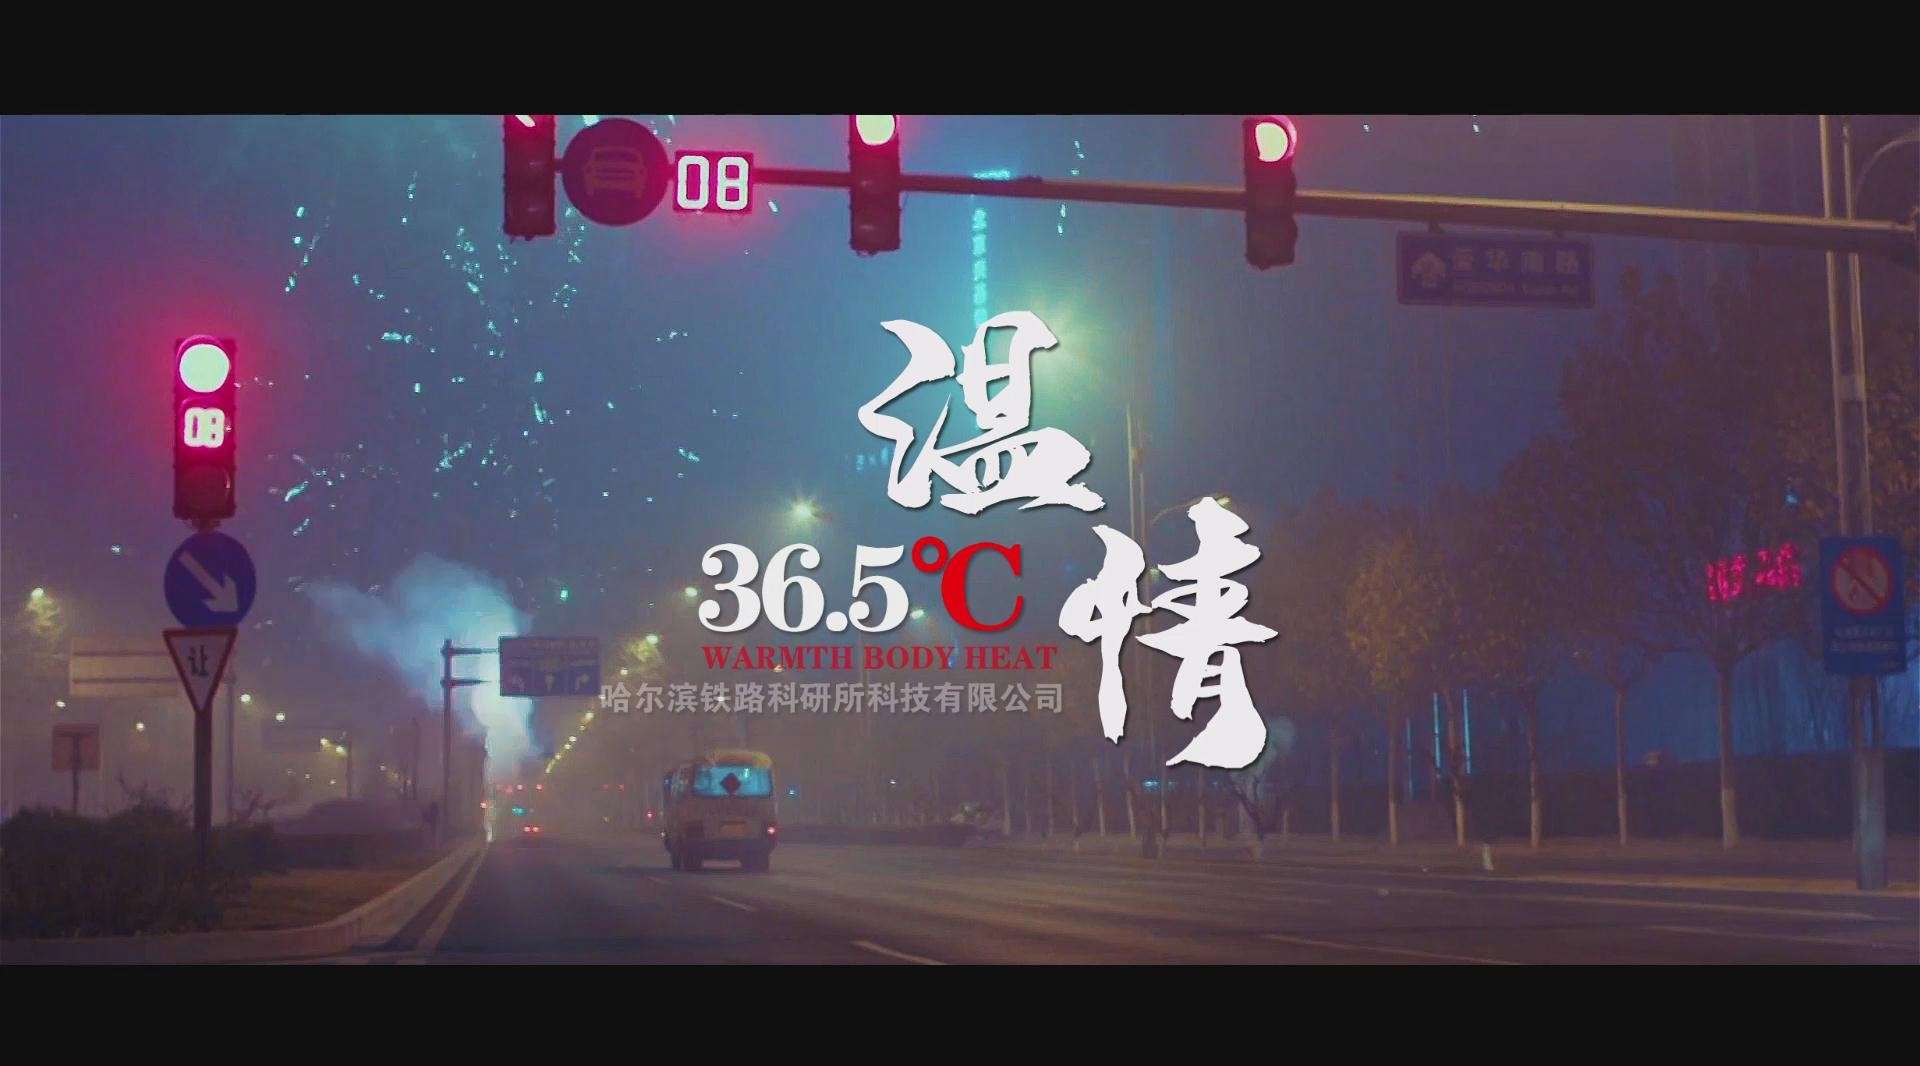 哈尔滨铁路科研所《温情365度》微电影